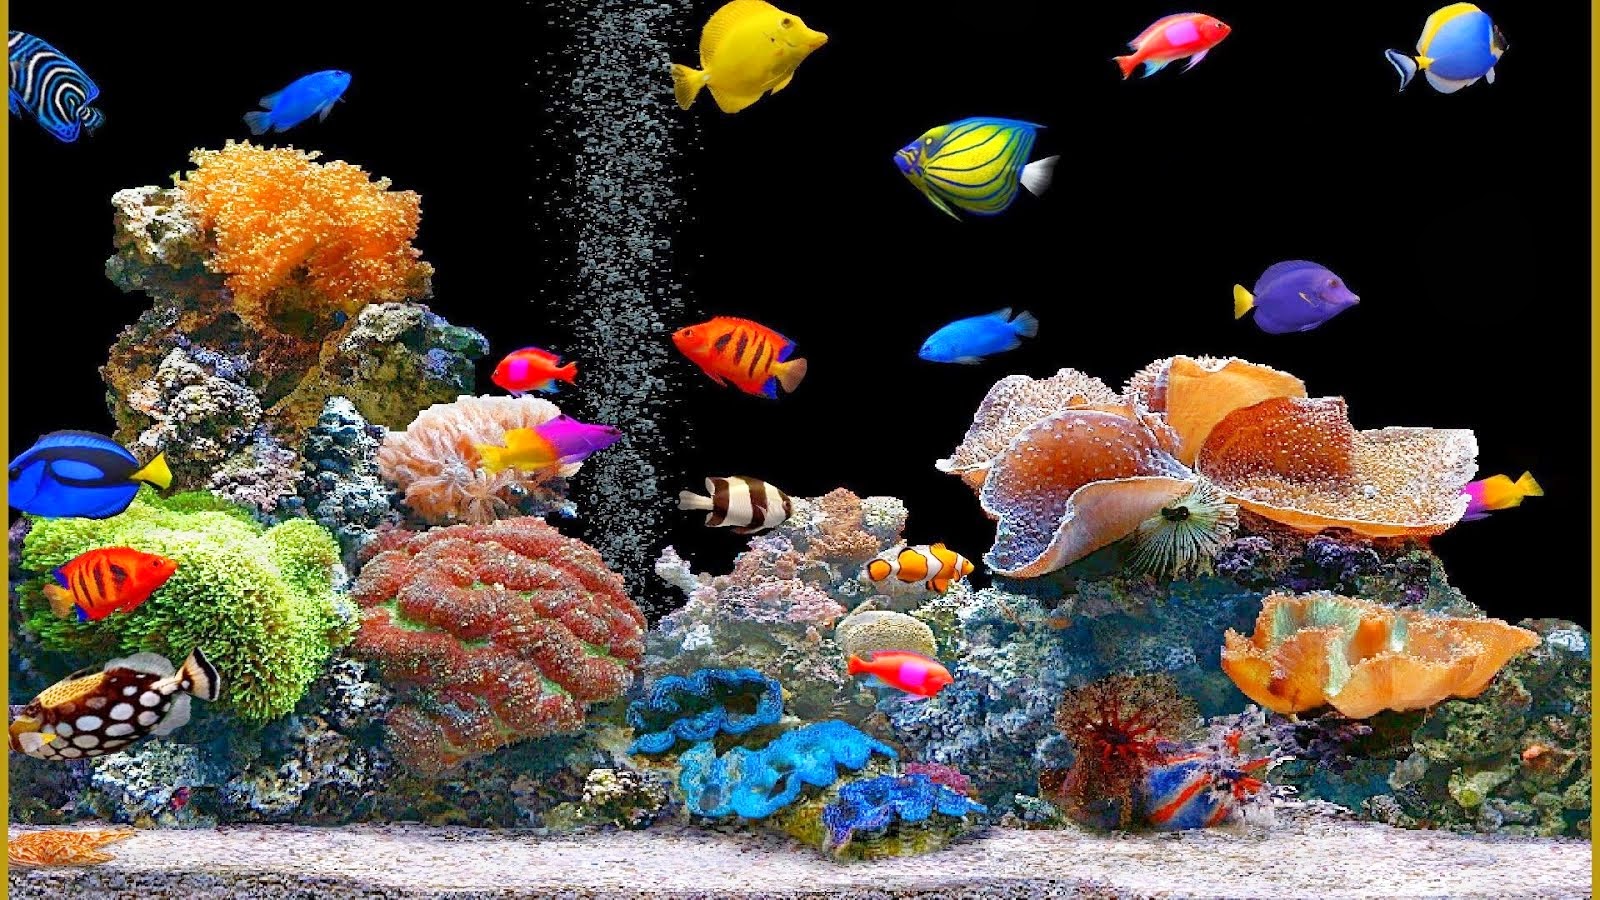 [49+] Moving Fish Aquarium Wallpaper on WallpaperSafari